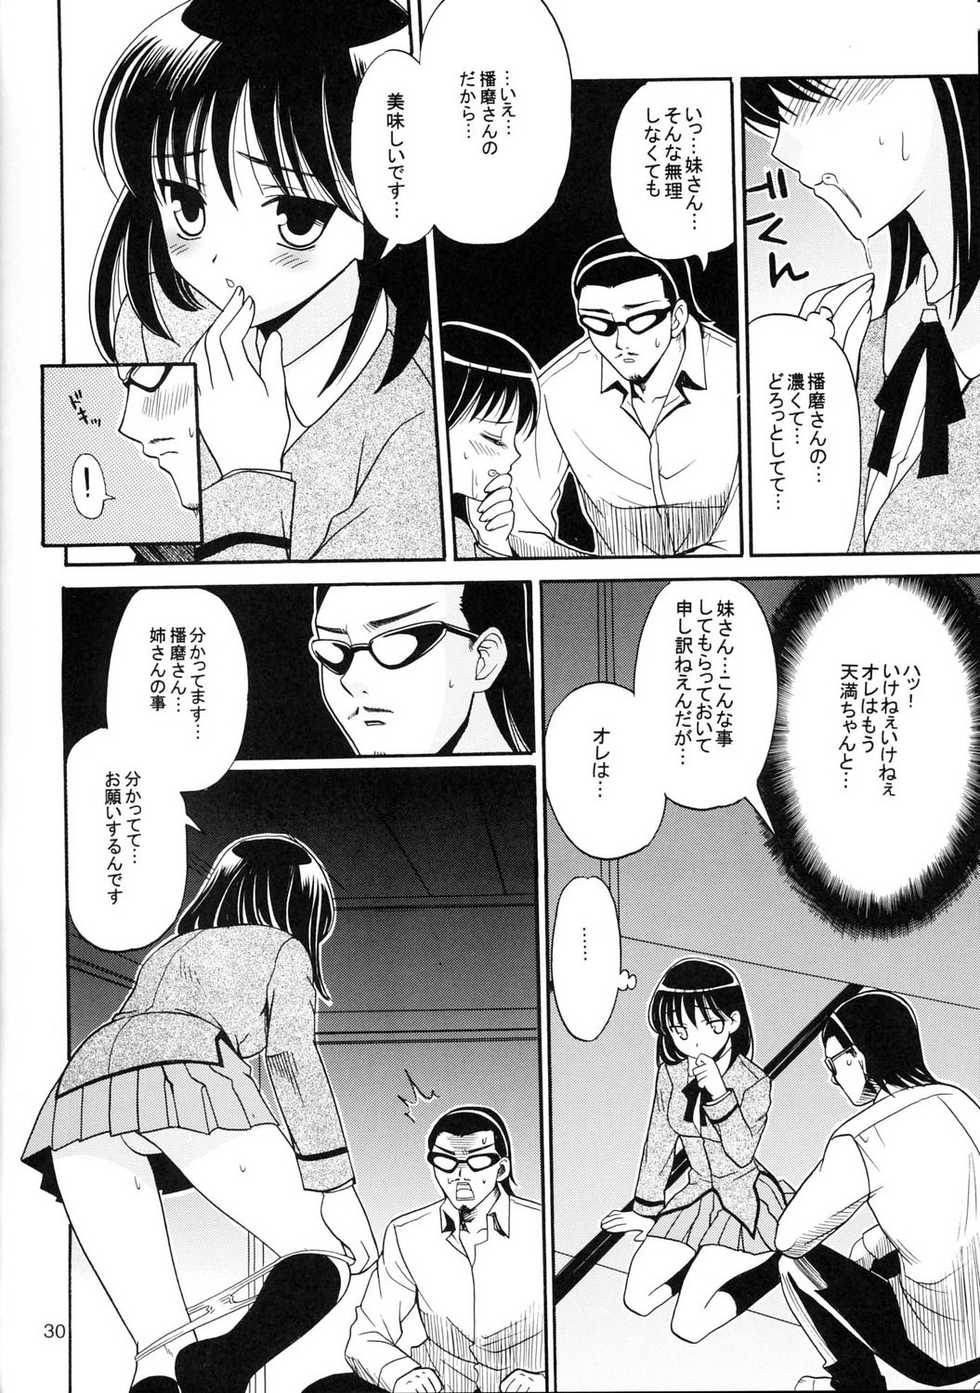 Page 29 C67 Teruo Haruo Kanekiyo Miwa Hige Seito Harima 3 School Rumble Akuma Moe